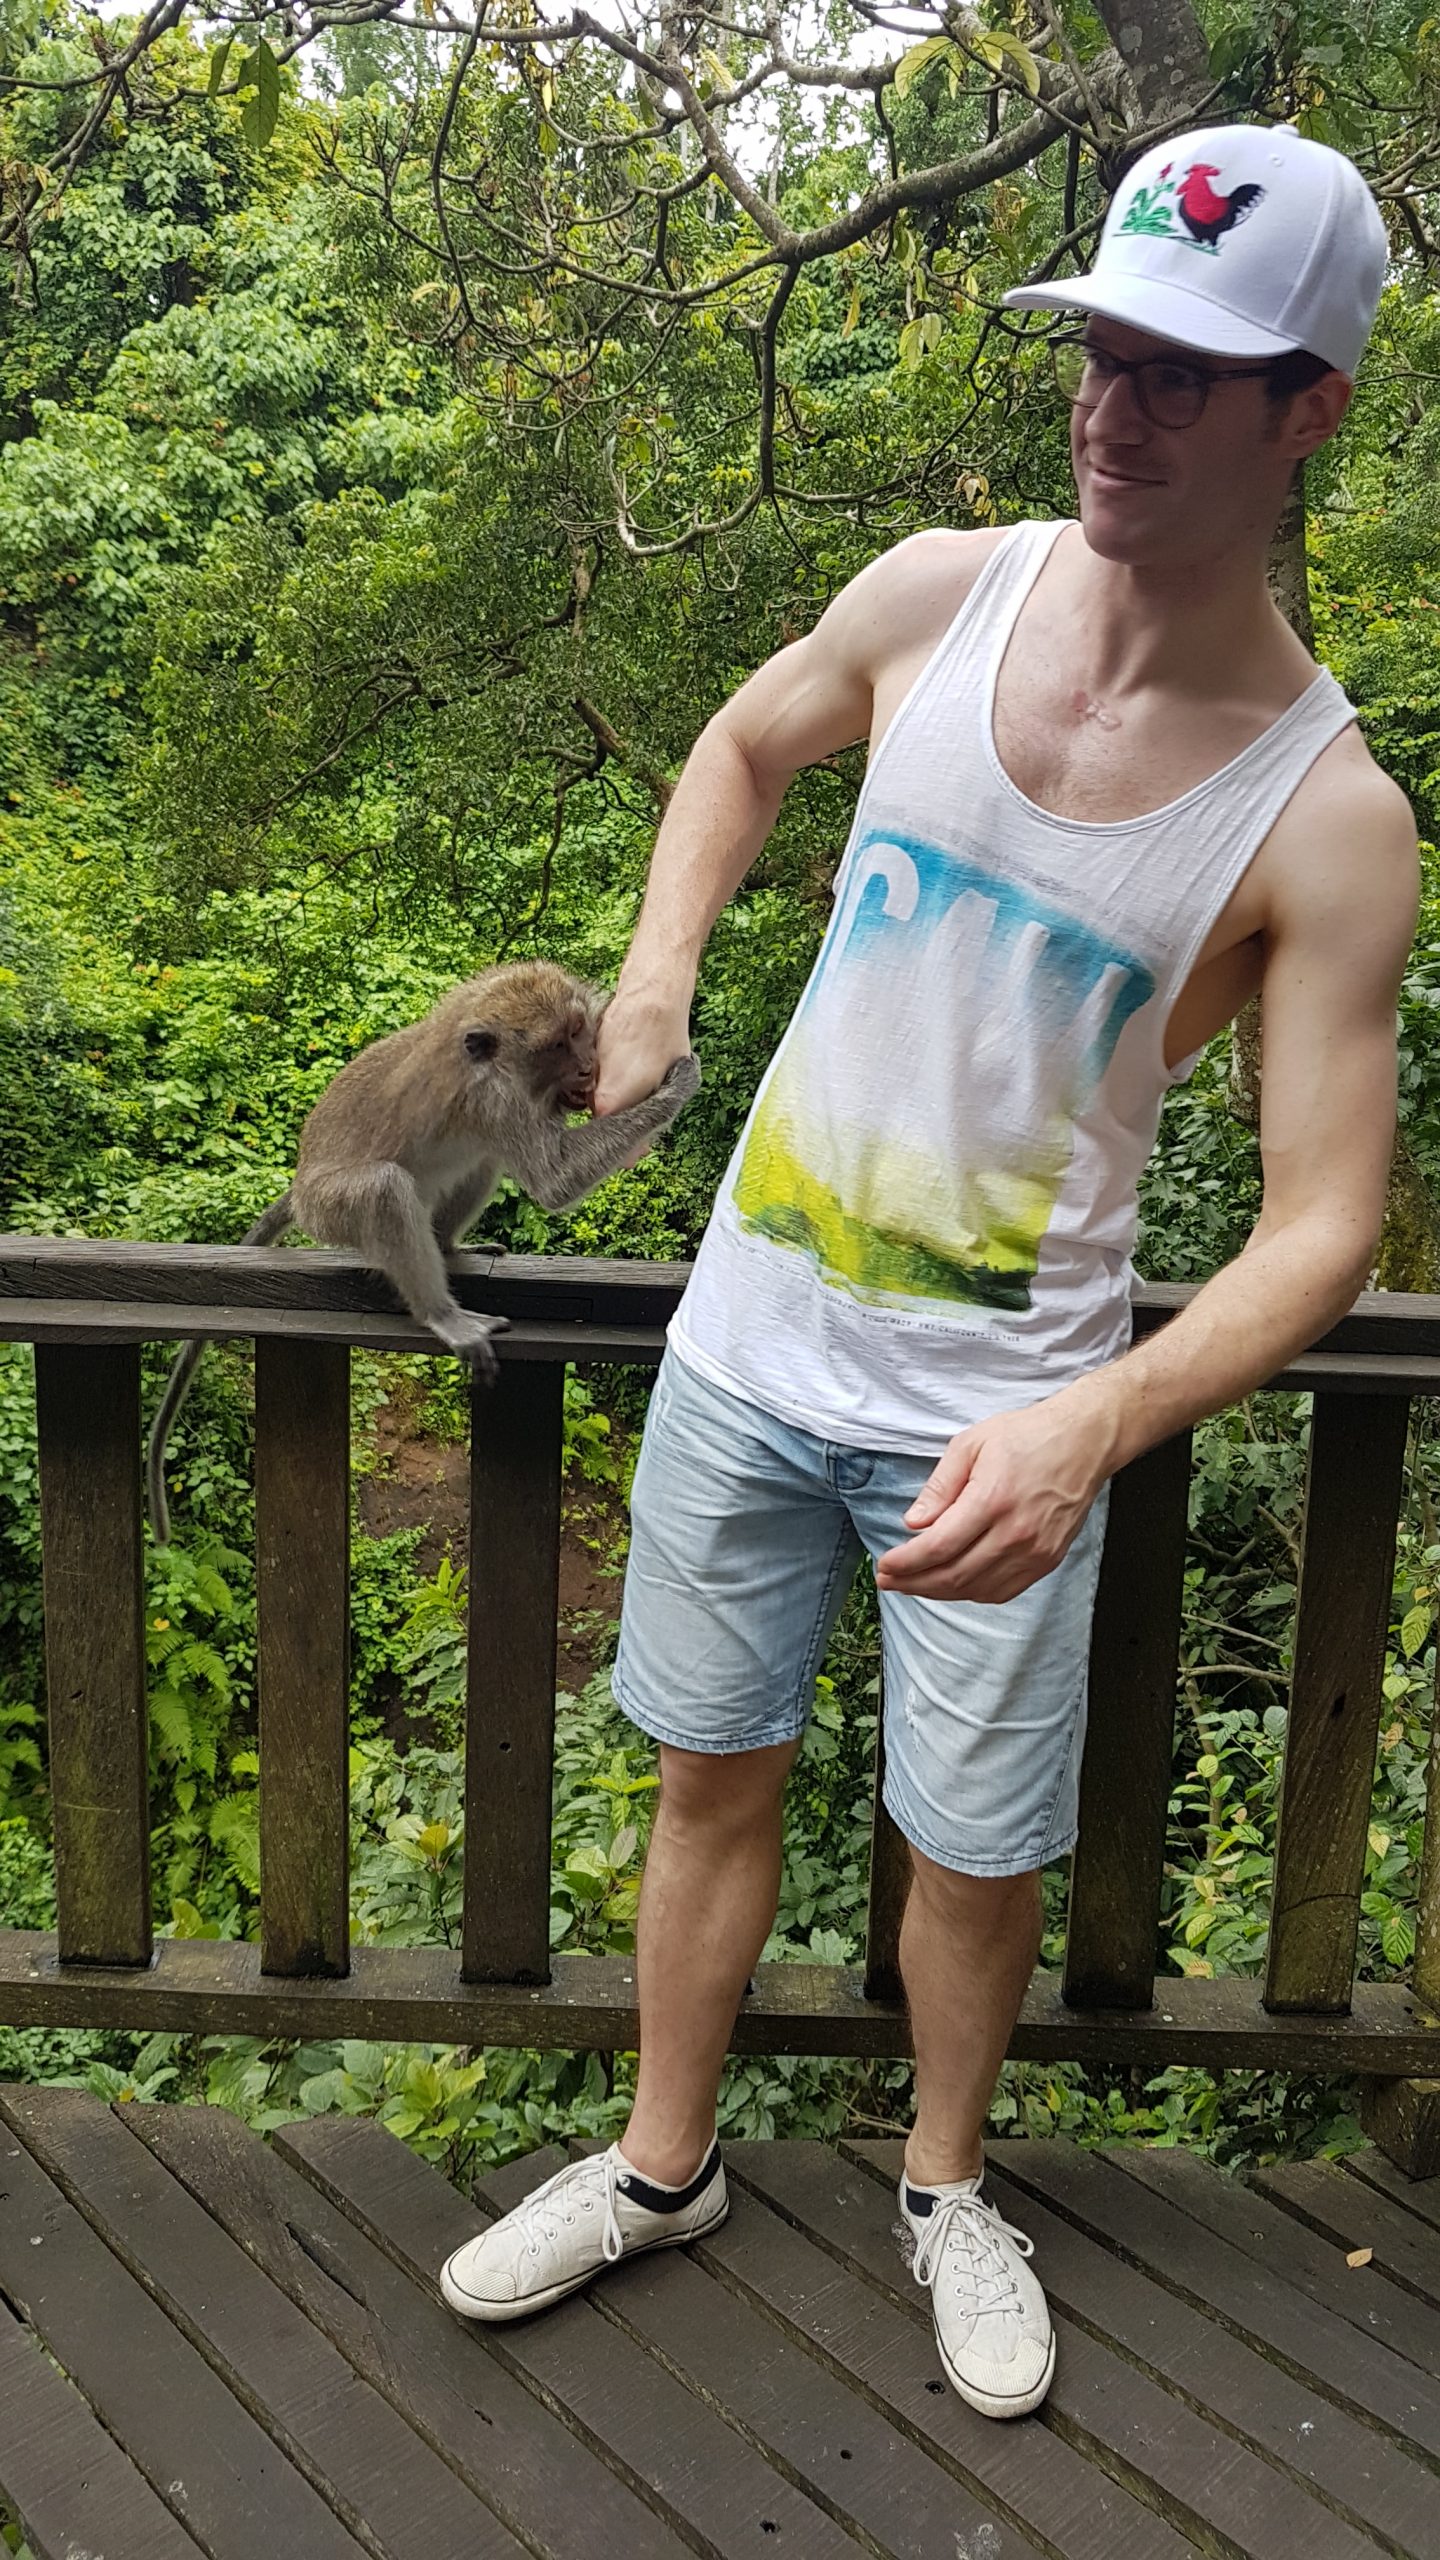 That monkey bite me!